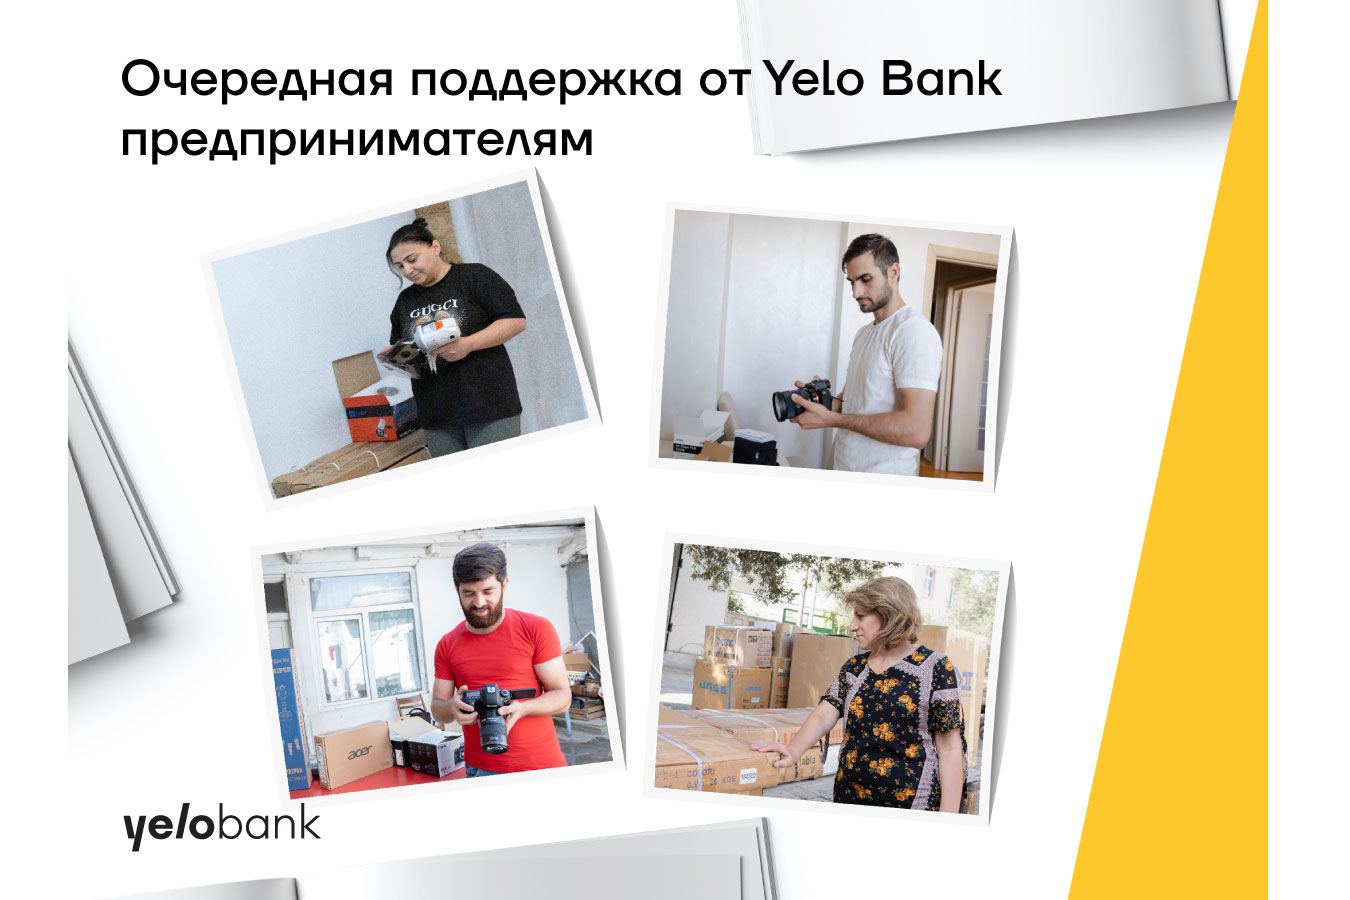 Yelo Bank поддержал граждан в создании собственного бизнеса